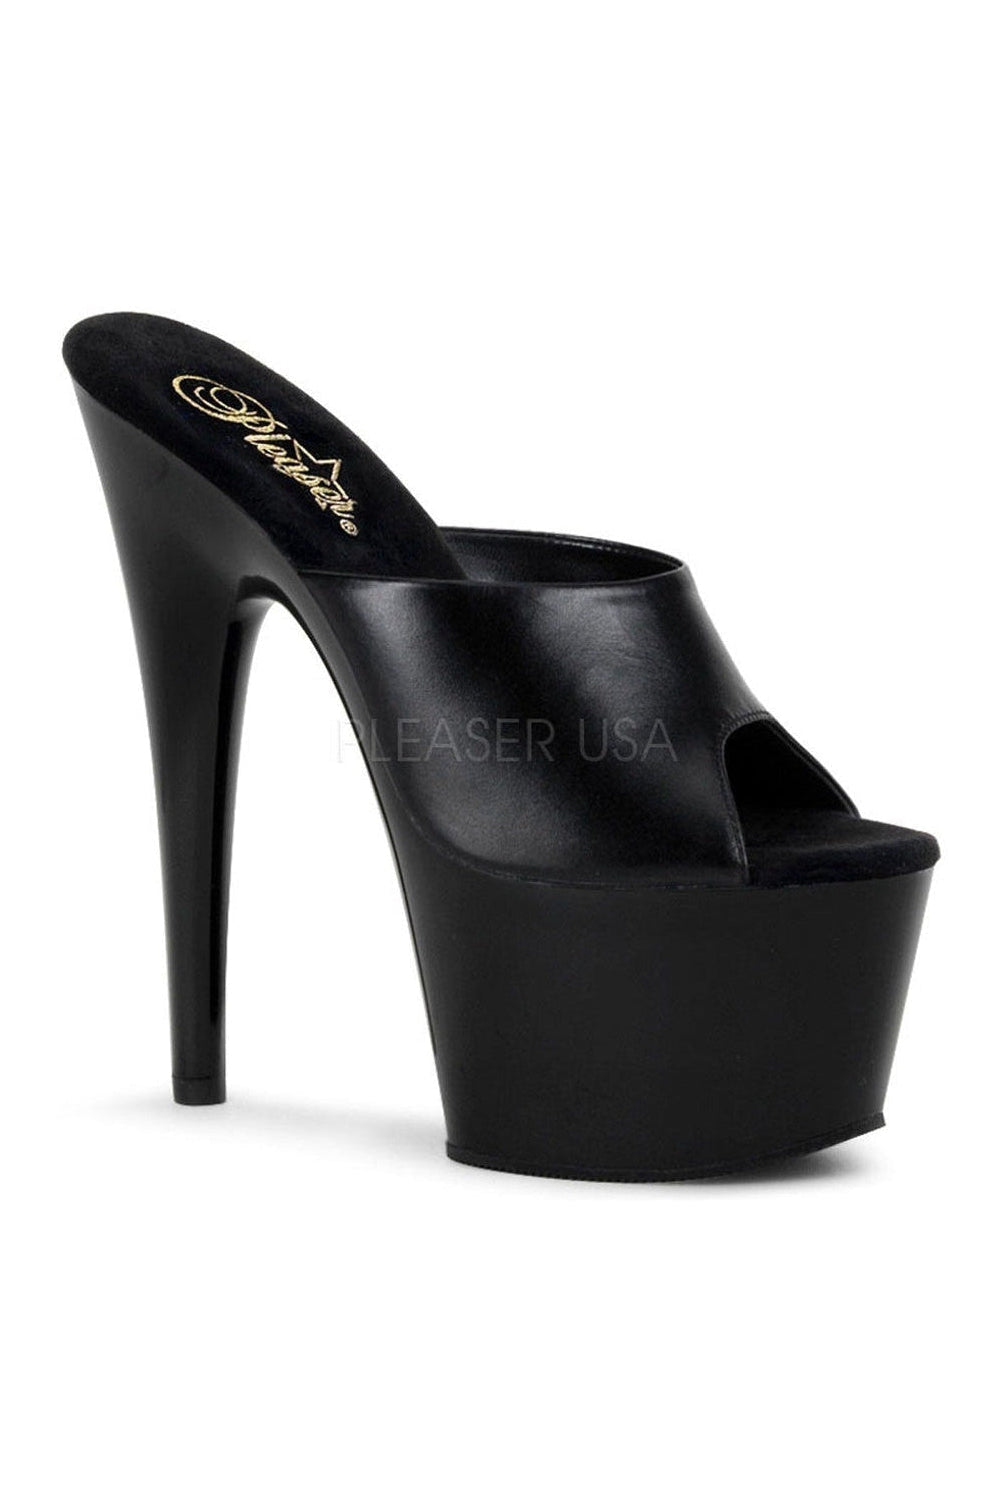 ADORE-701 Platform Slide | Black Genuine Leather-Pleaser-Black-Slides-SEXYSHOES.COM